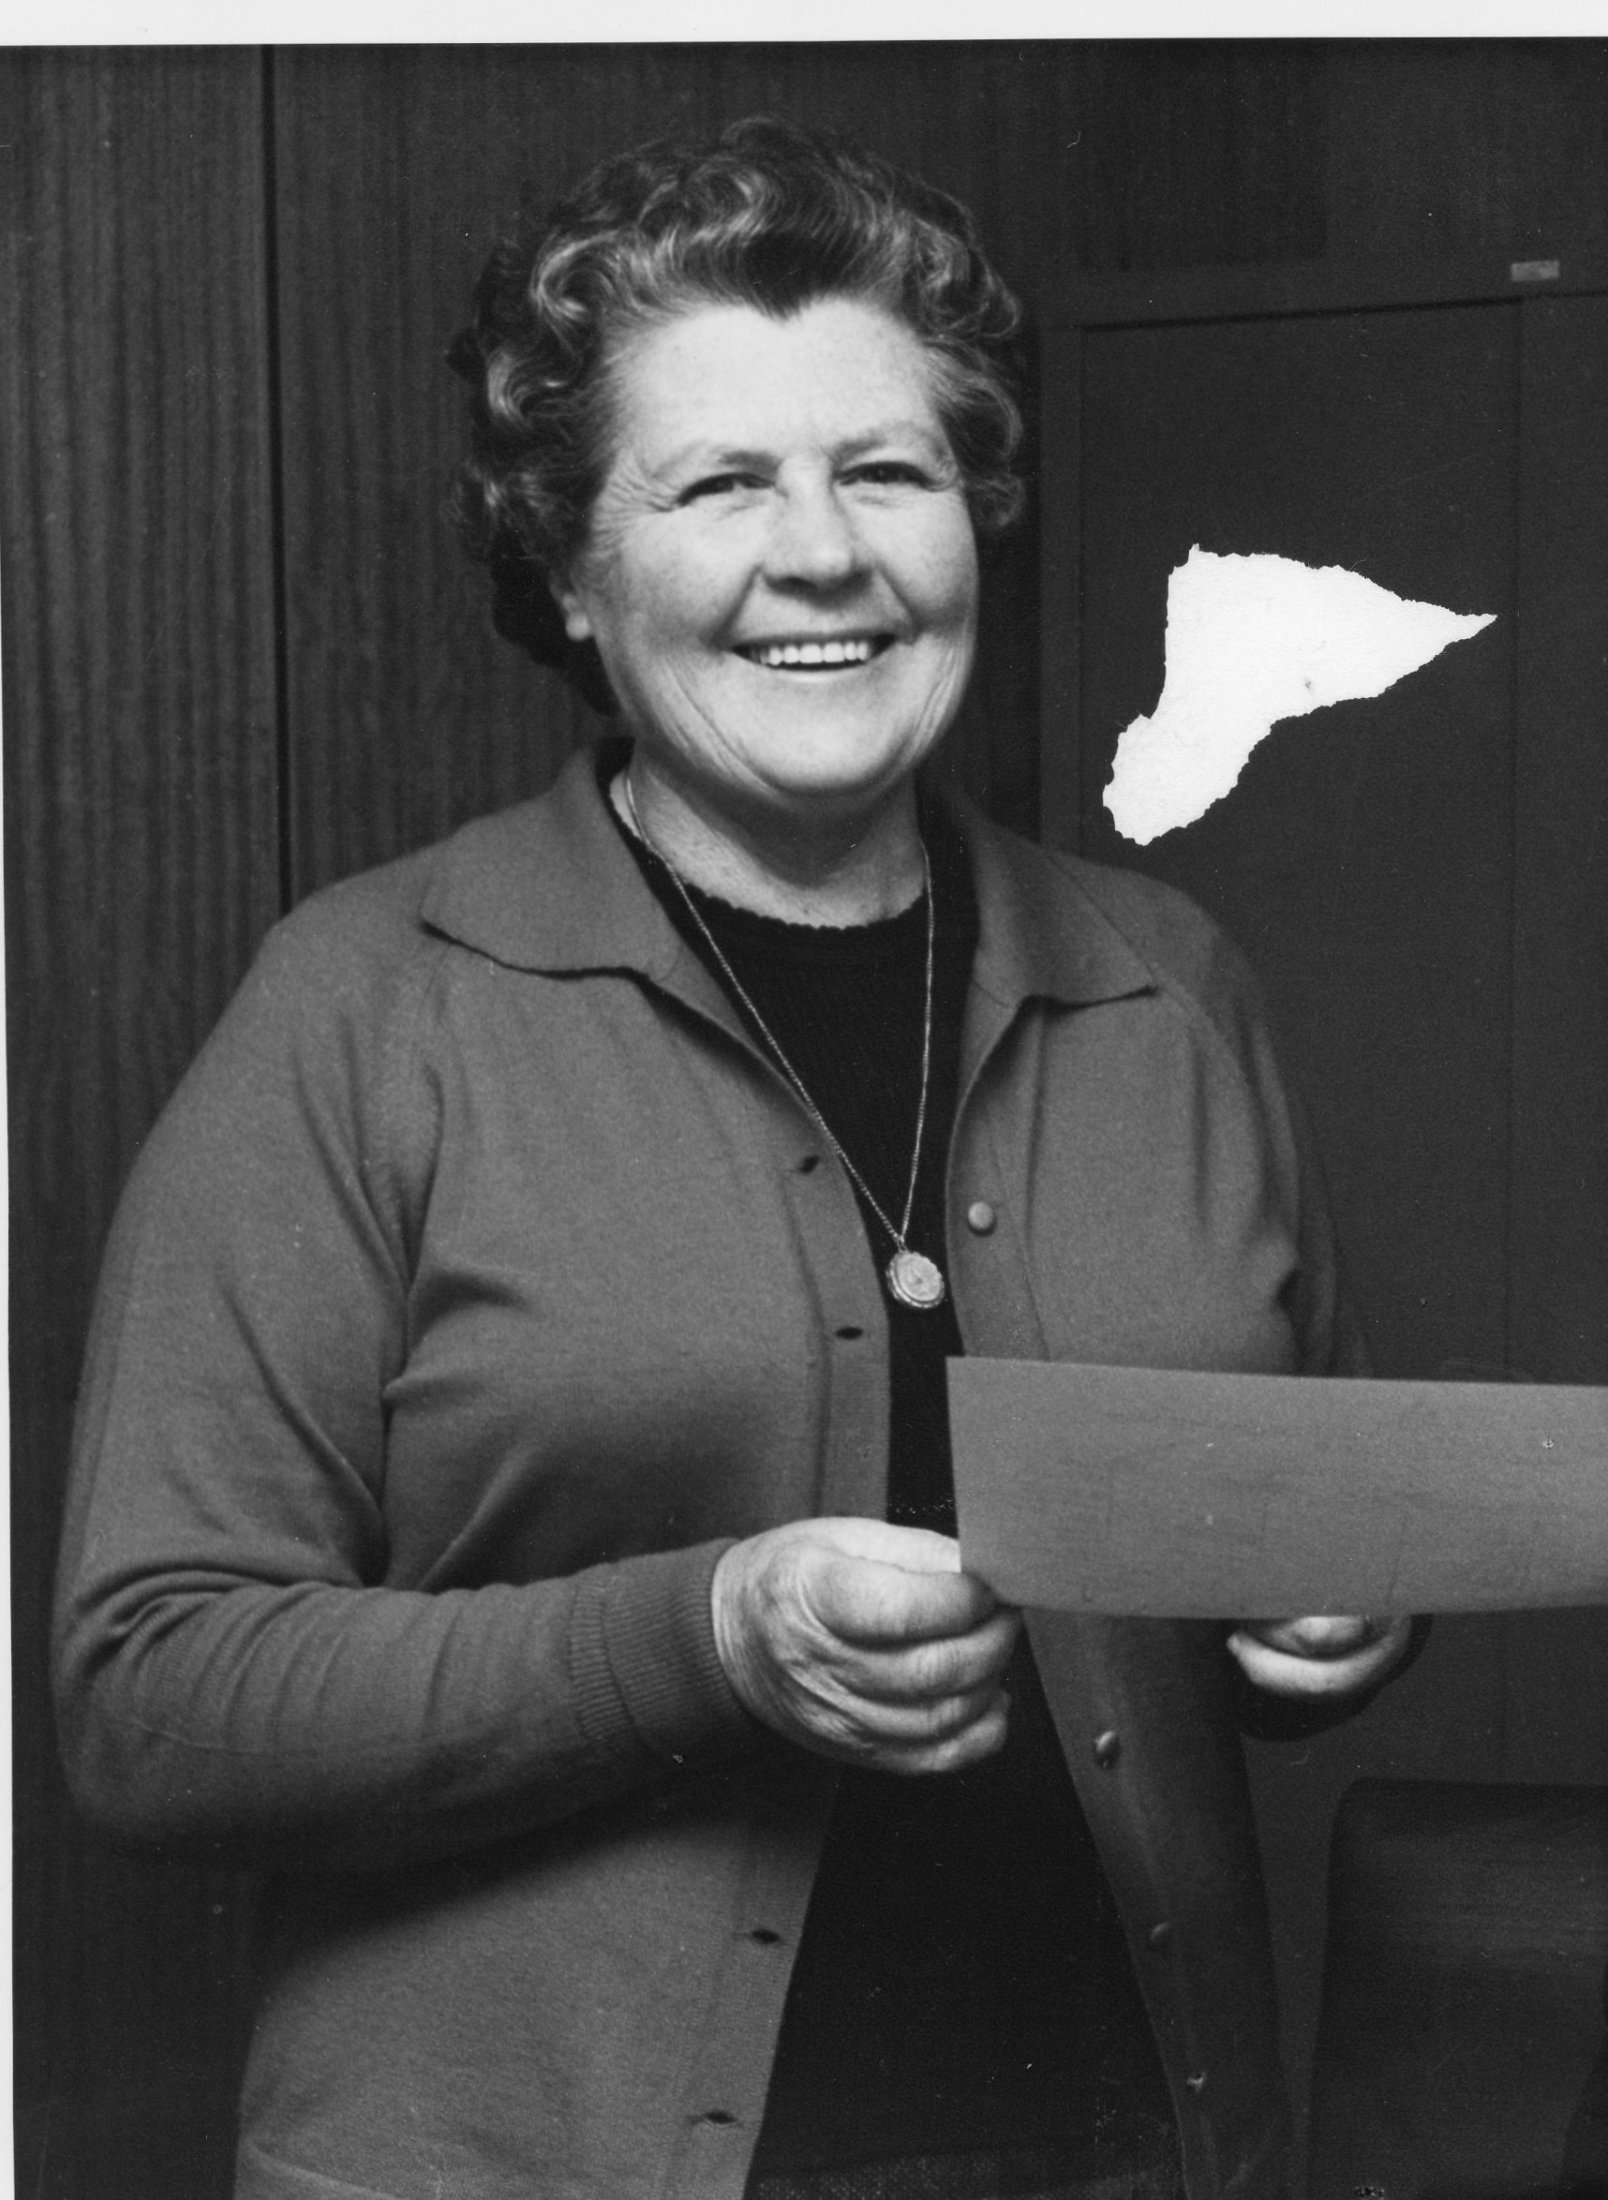 1974 - KC - Deaconess Phyllis Bonython